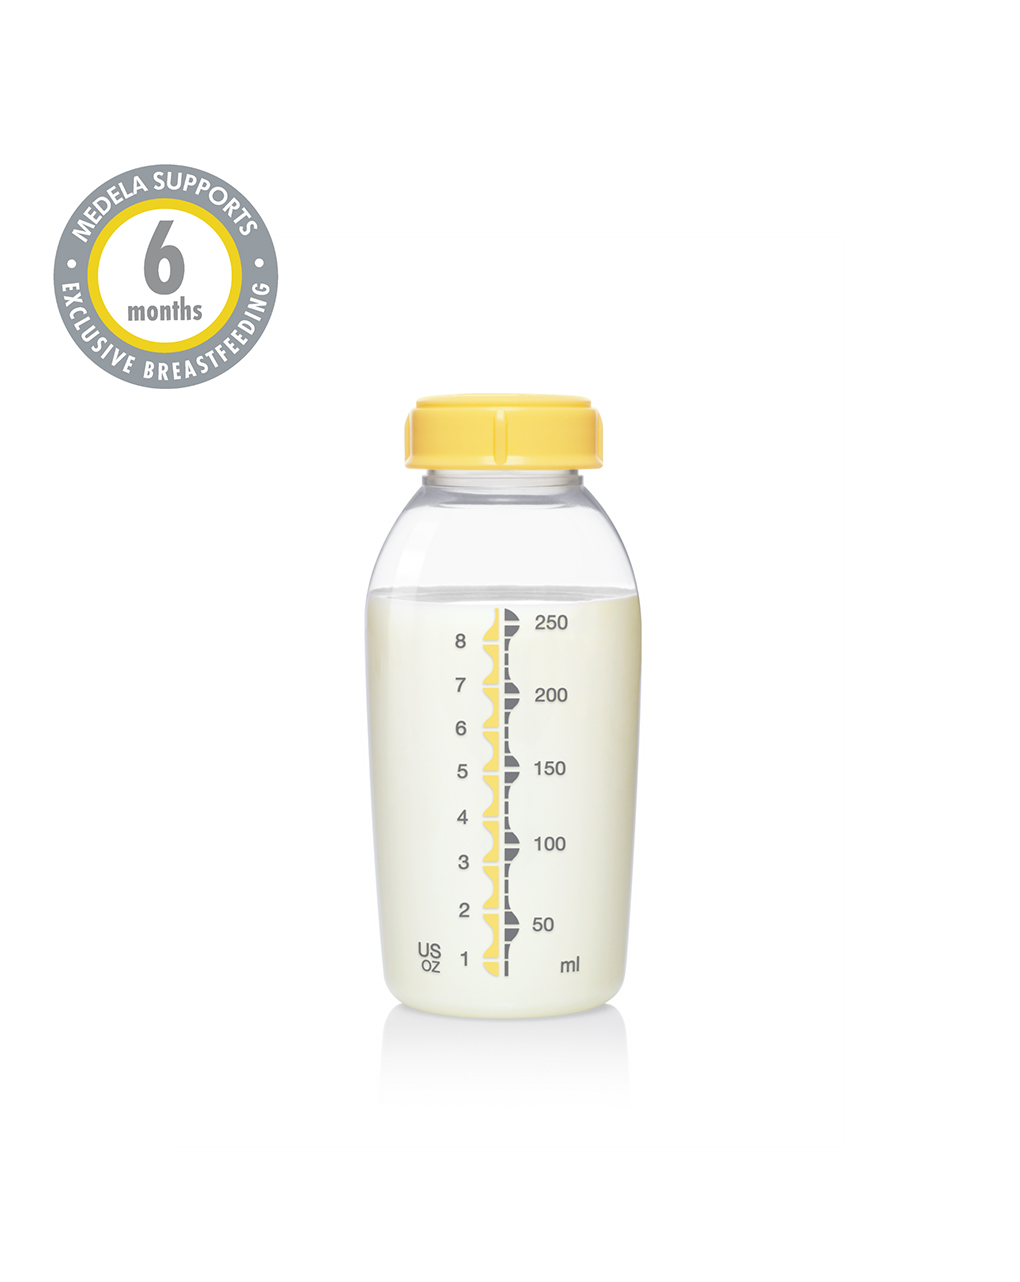 Medela breast milk bottles φιάλες μητρικού γάλακτος 150ml x 3 τμχ - Medela